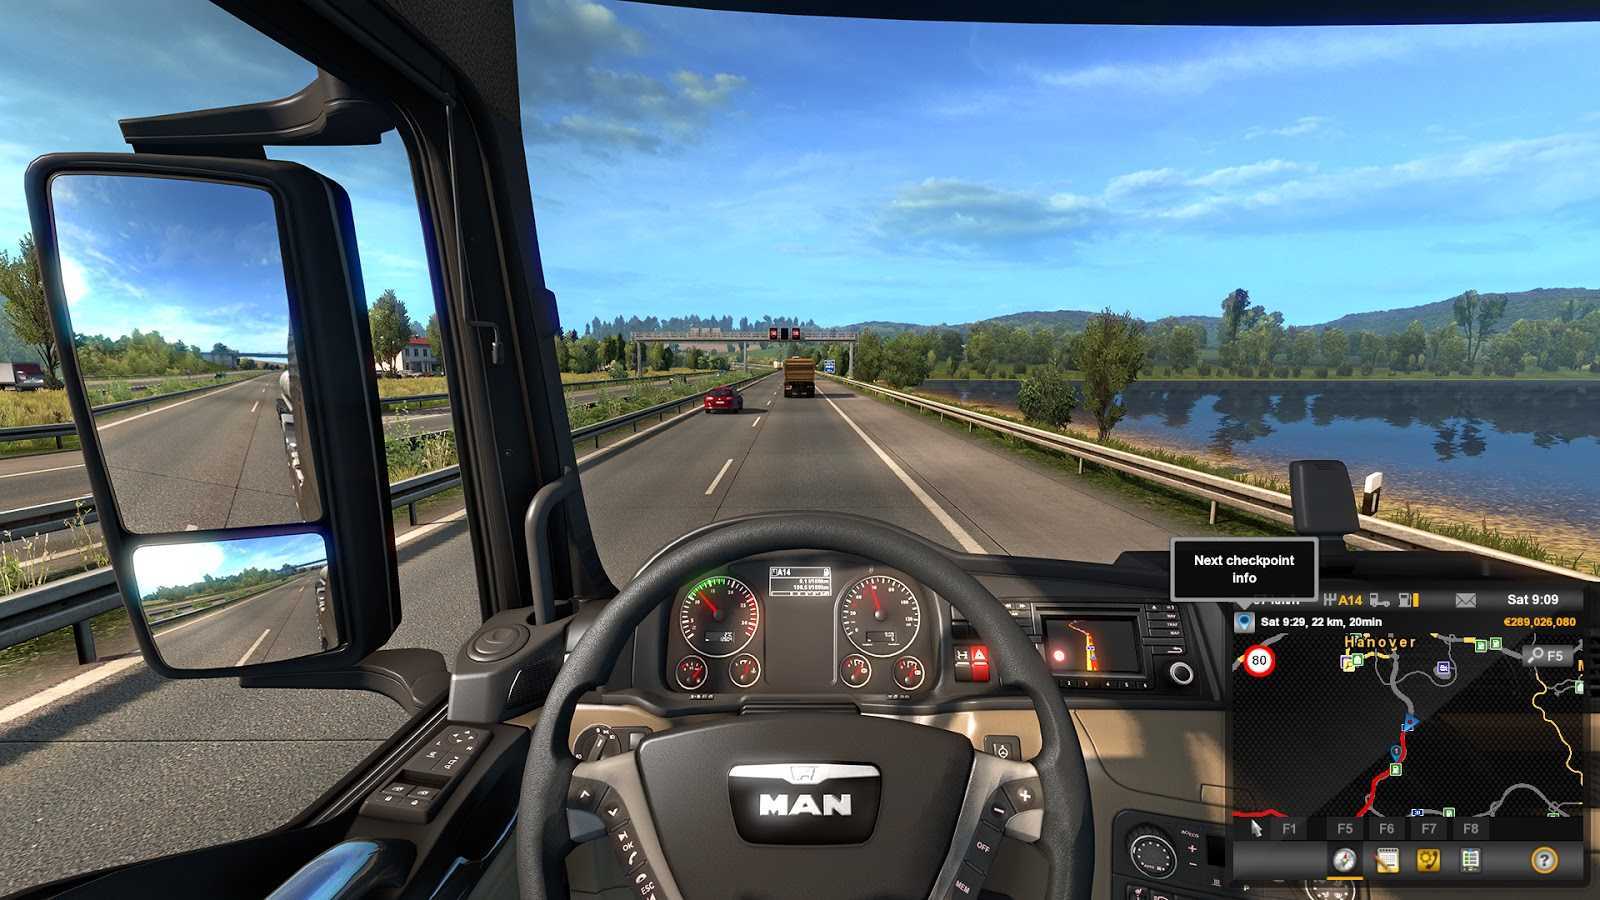 Последние новости и слухи о Euro Truck Simulator 2 за сегодня и 2022 год Здесь вы найдете все новости обновлений Euro Truck Simulator 2, узнаете дату выхода для PC, когда игра выйдет на других платформах и другие анонсы Также мы первые напишем о системных